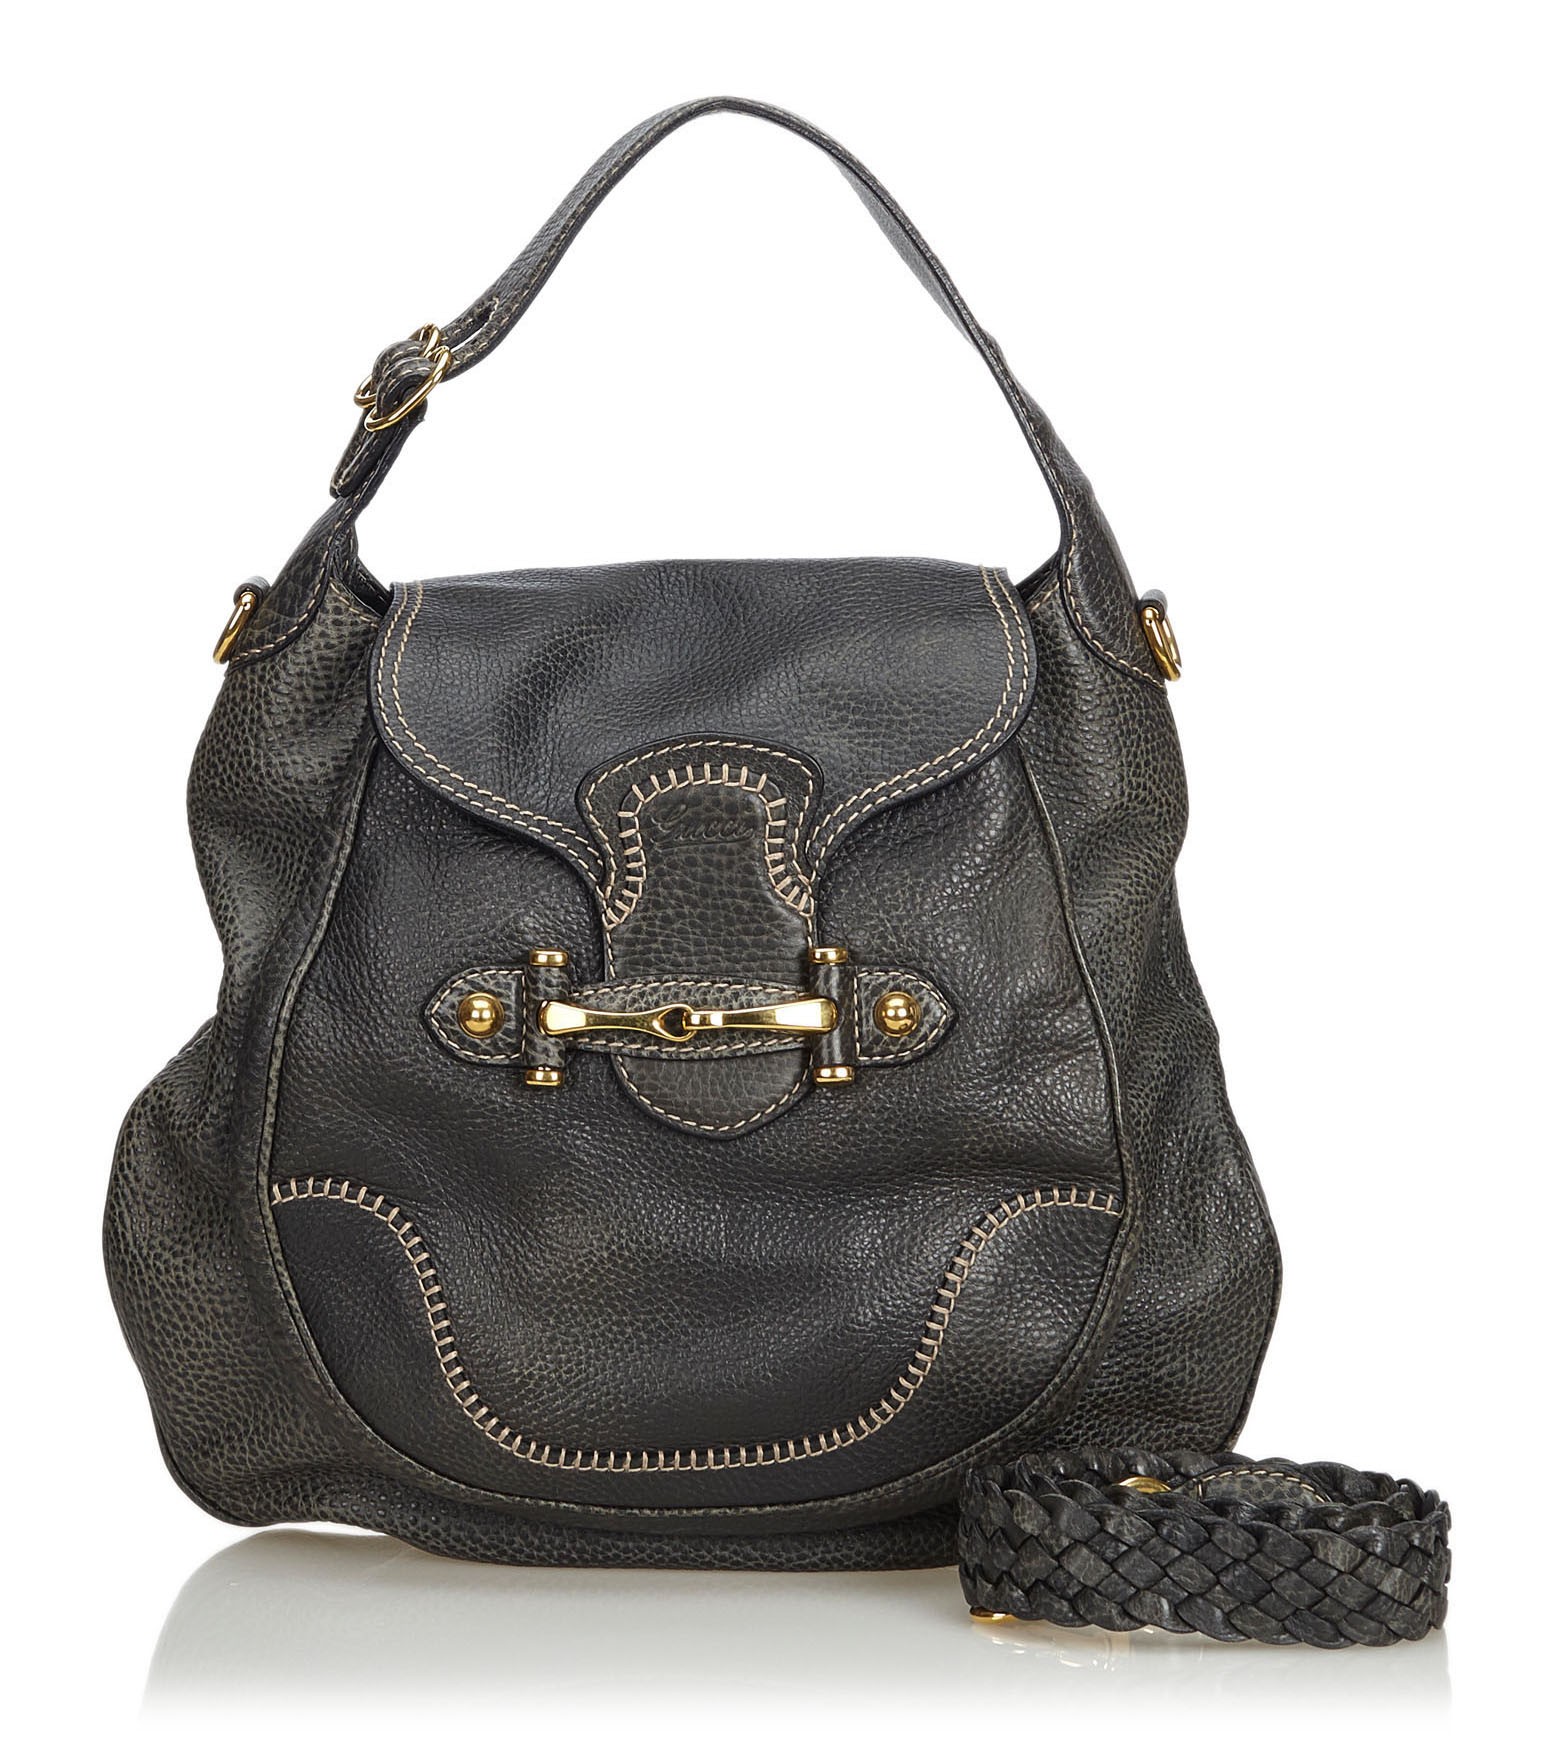 Vintage Gucci Handbag in Black Leather, c.1960s – Menage Modern Vintage